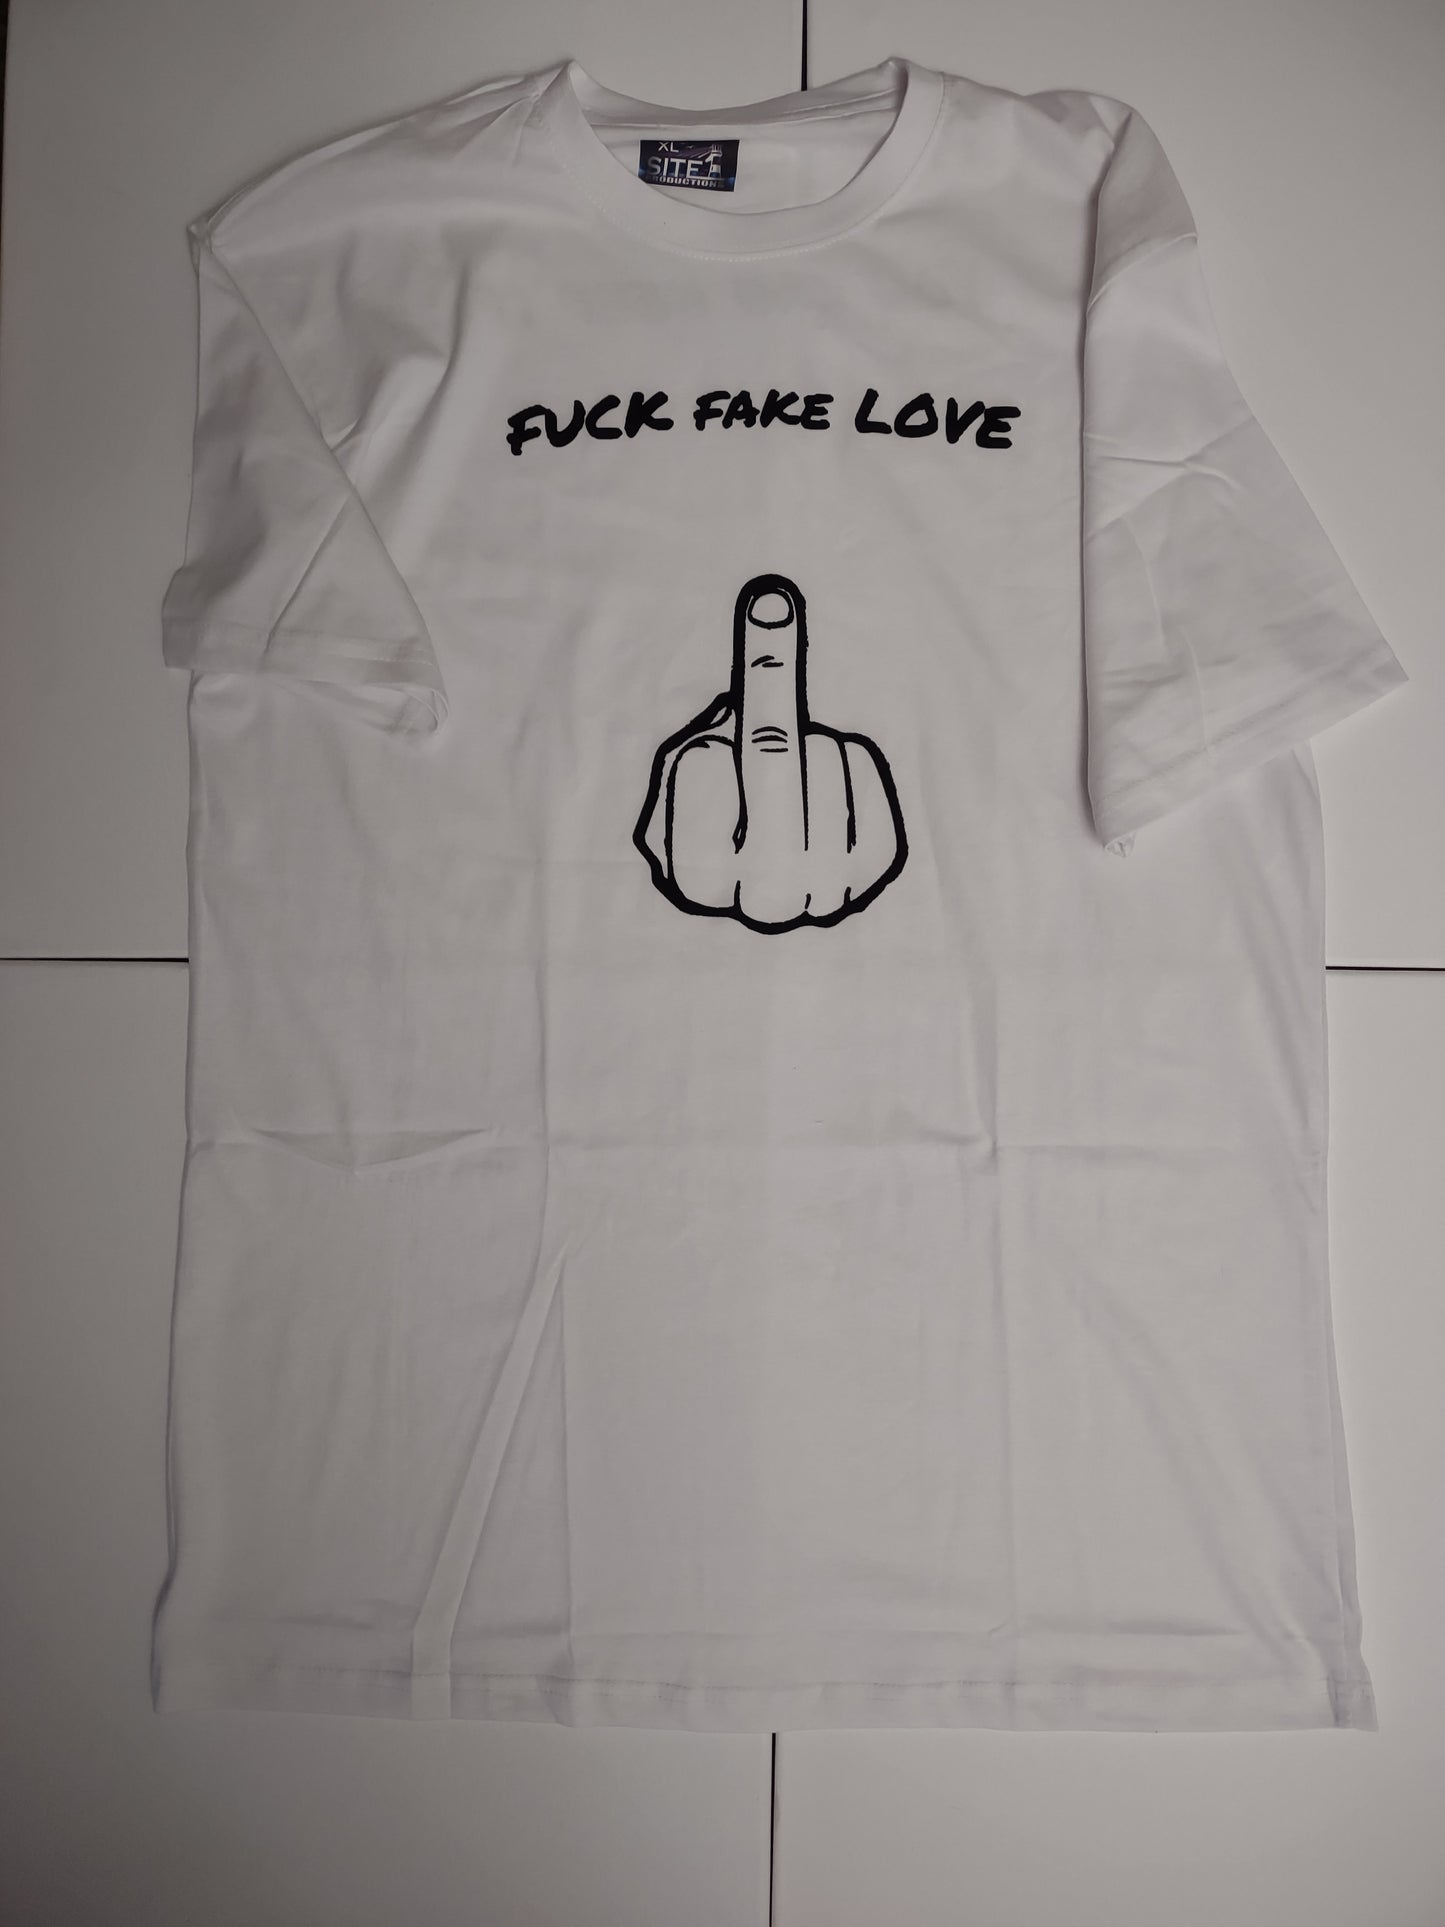 Fu** fake love t-shirt